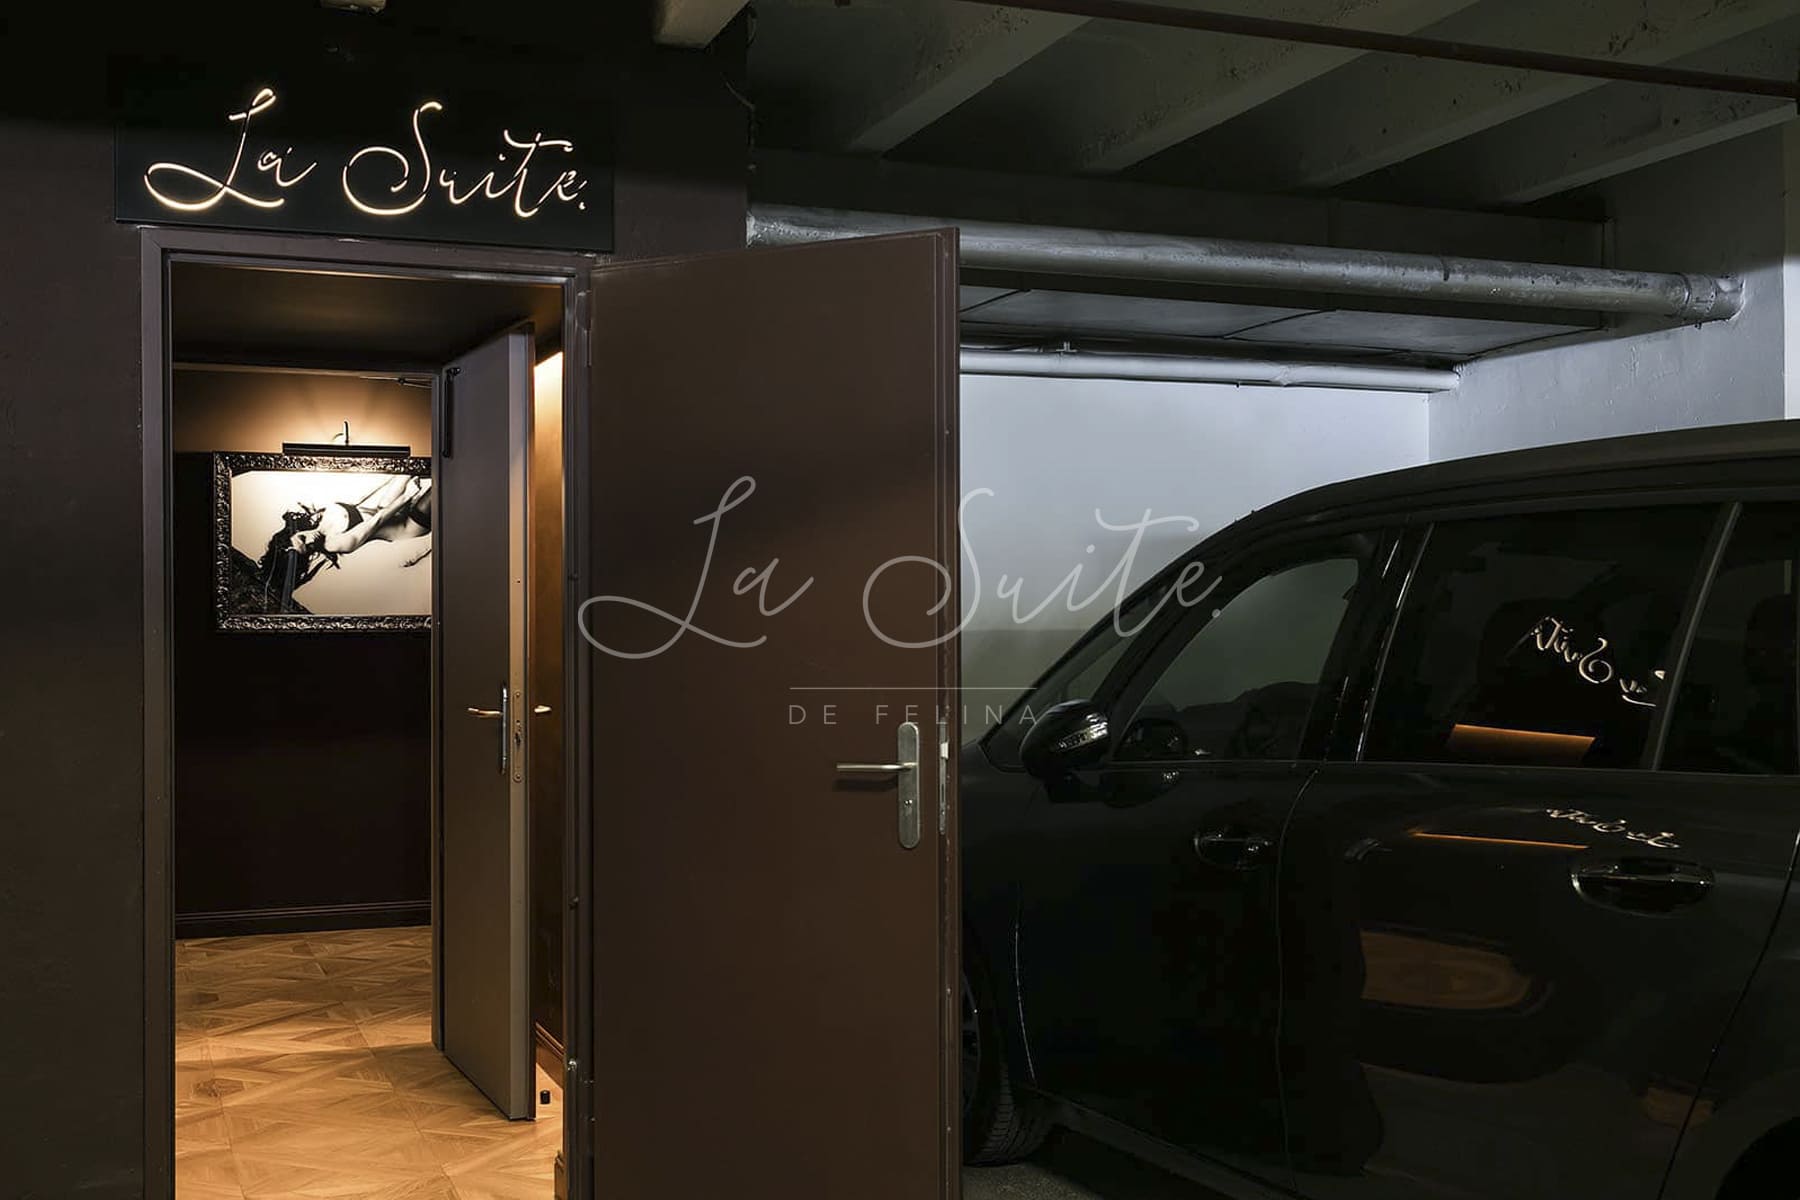 Entrada discreta en parking subterráneo de la casa de escorts lujosa La Suite, Barcelona